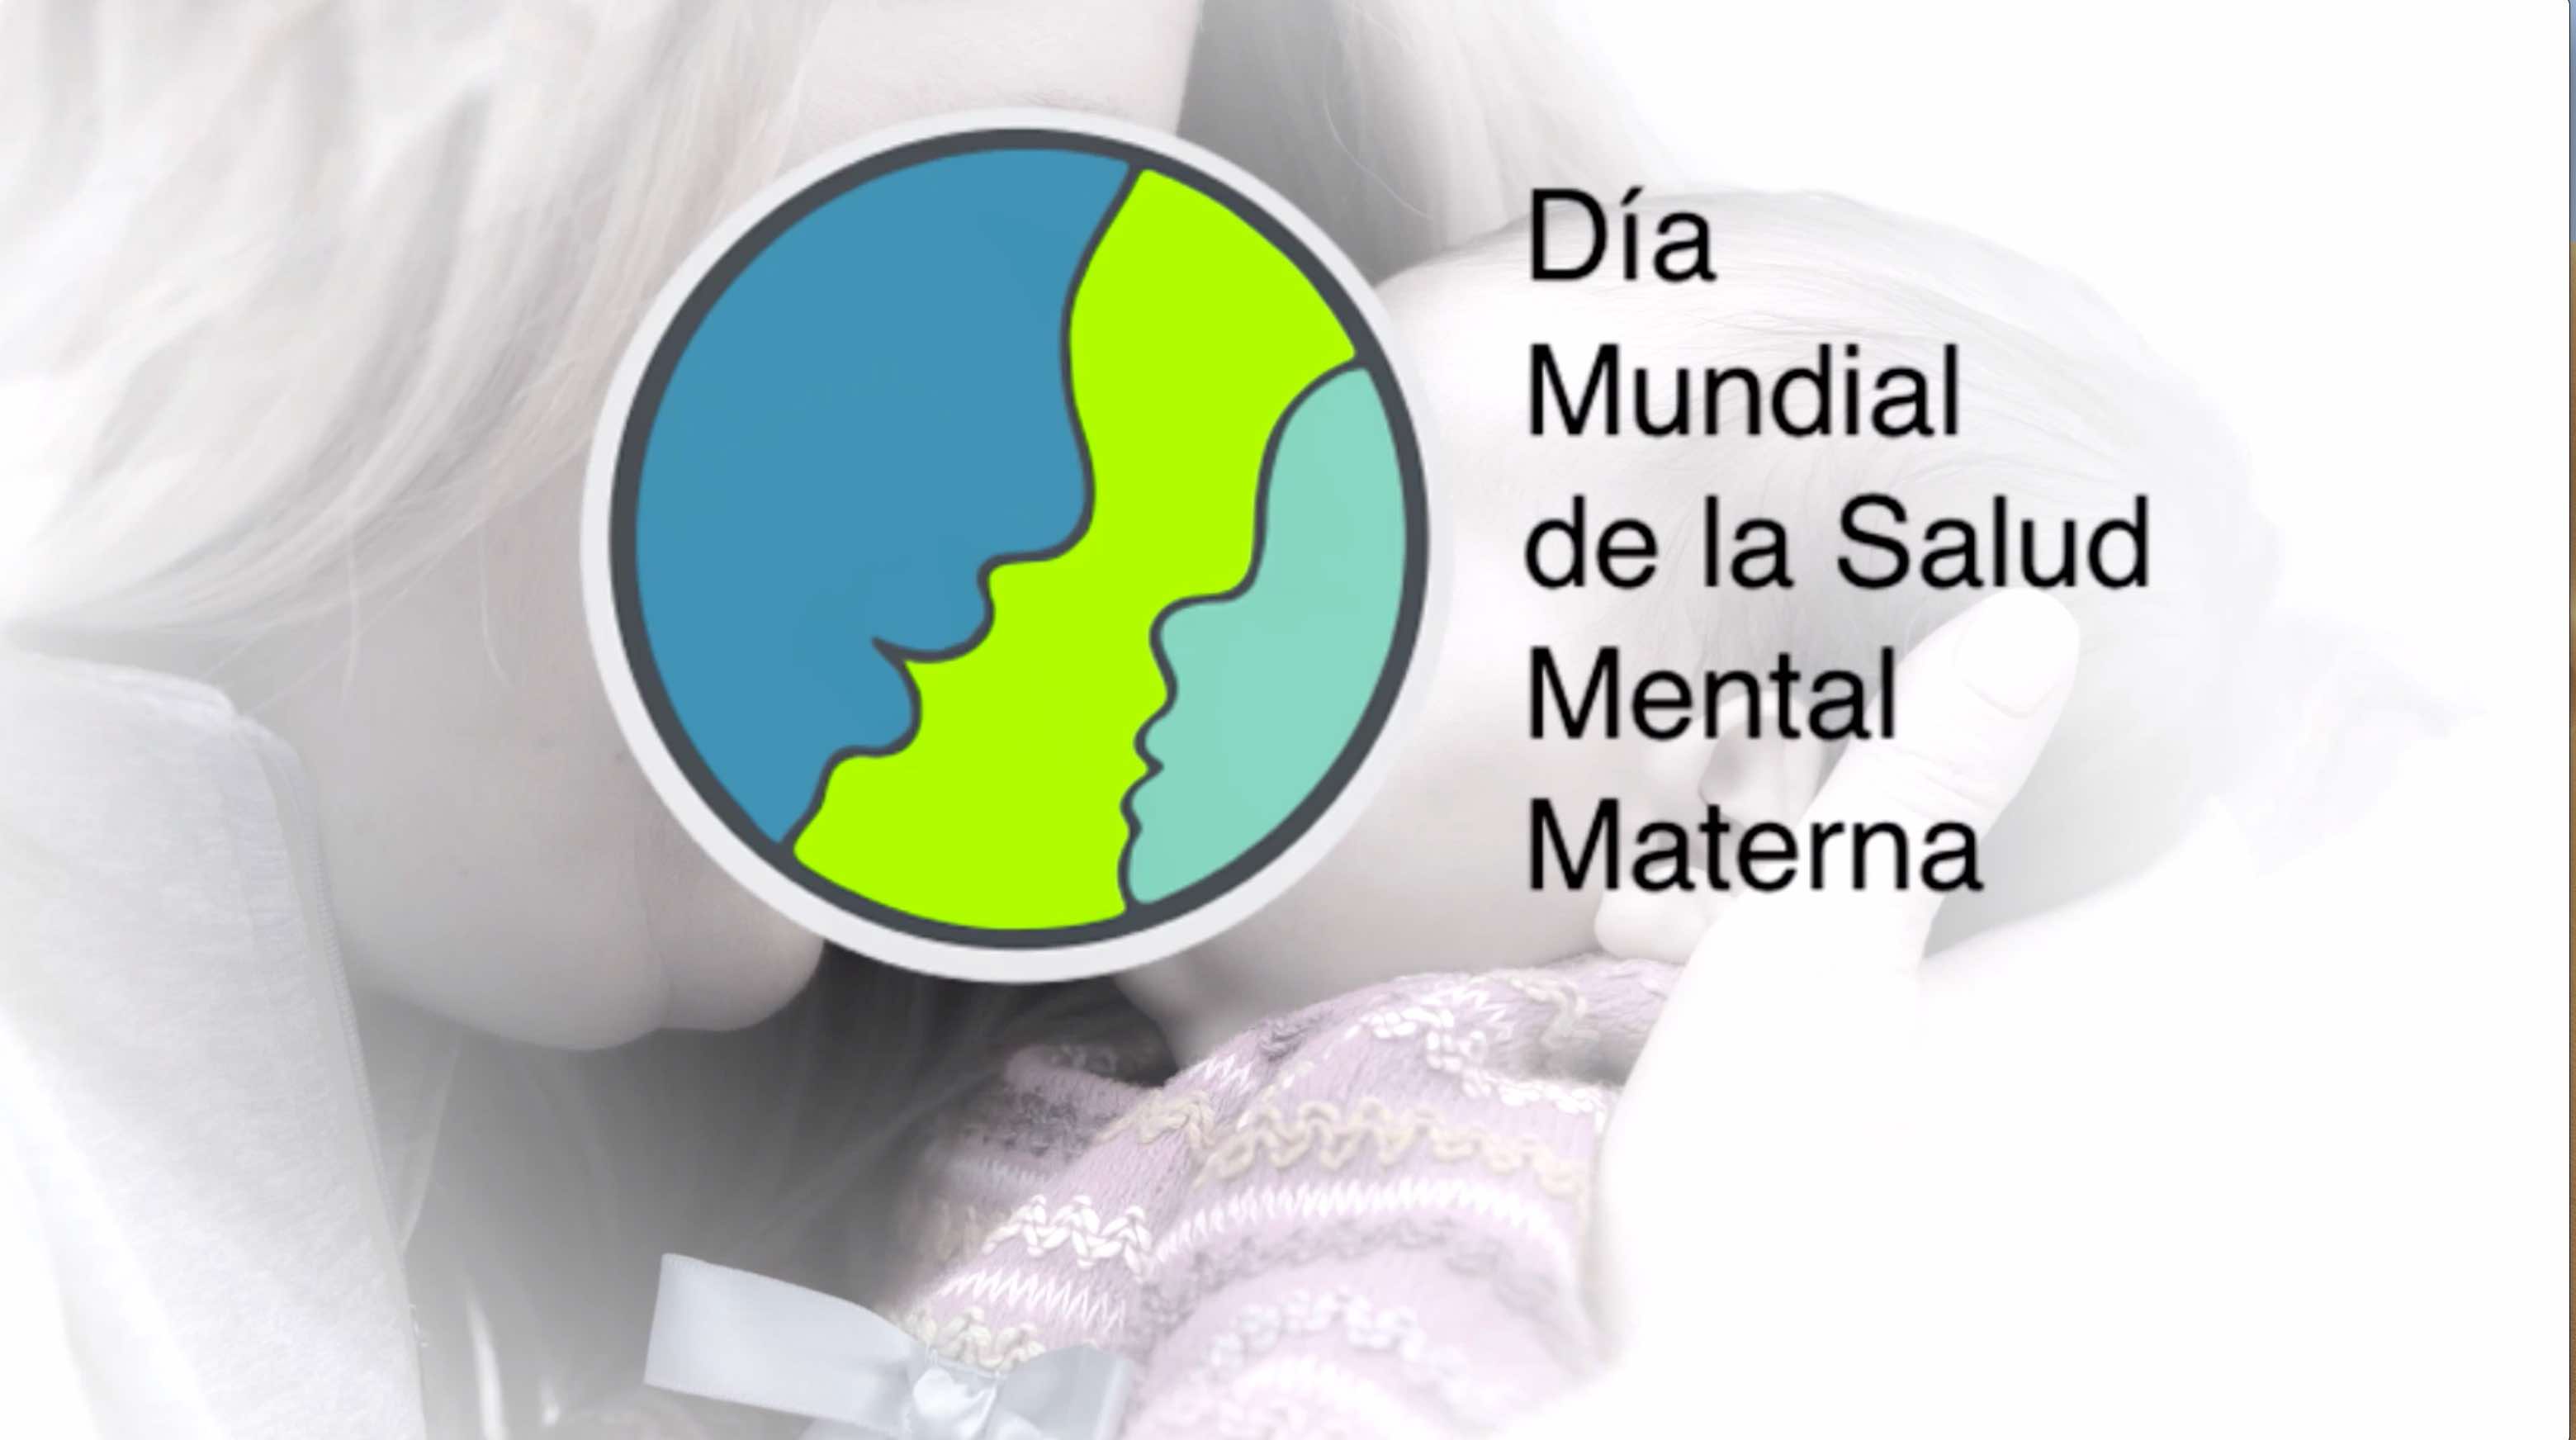 Vídeo per a difondre la Campanya del Dia Mundial de la Salut Mental Materna